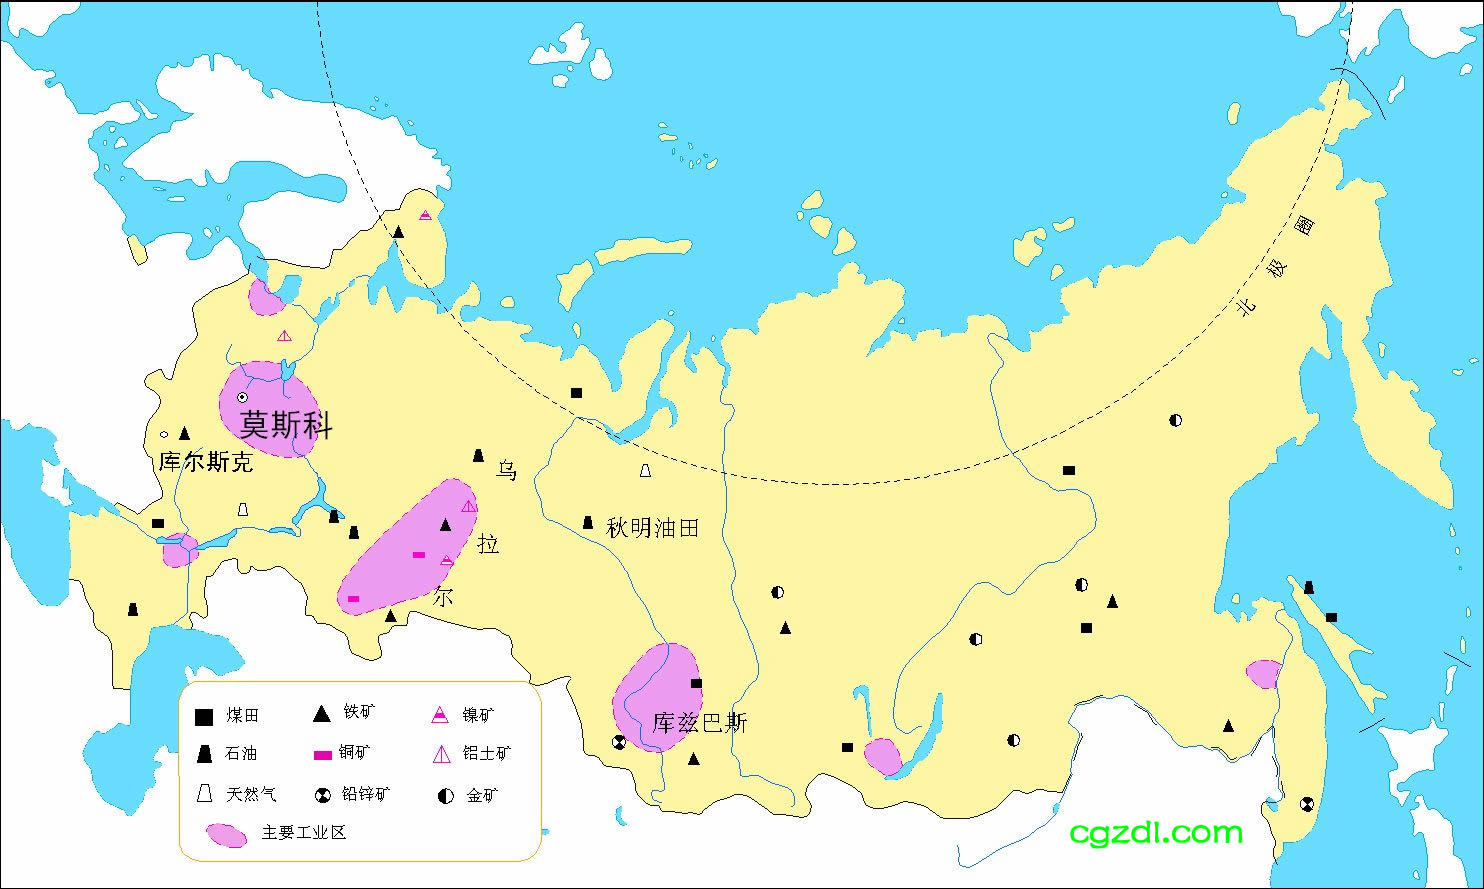 俄罗斯行政区划_图片_互动百科